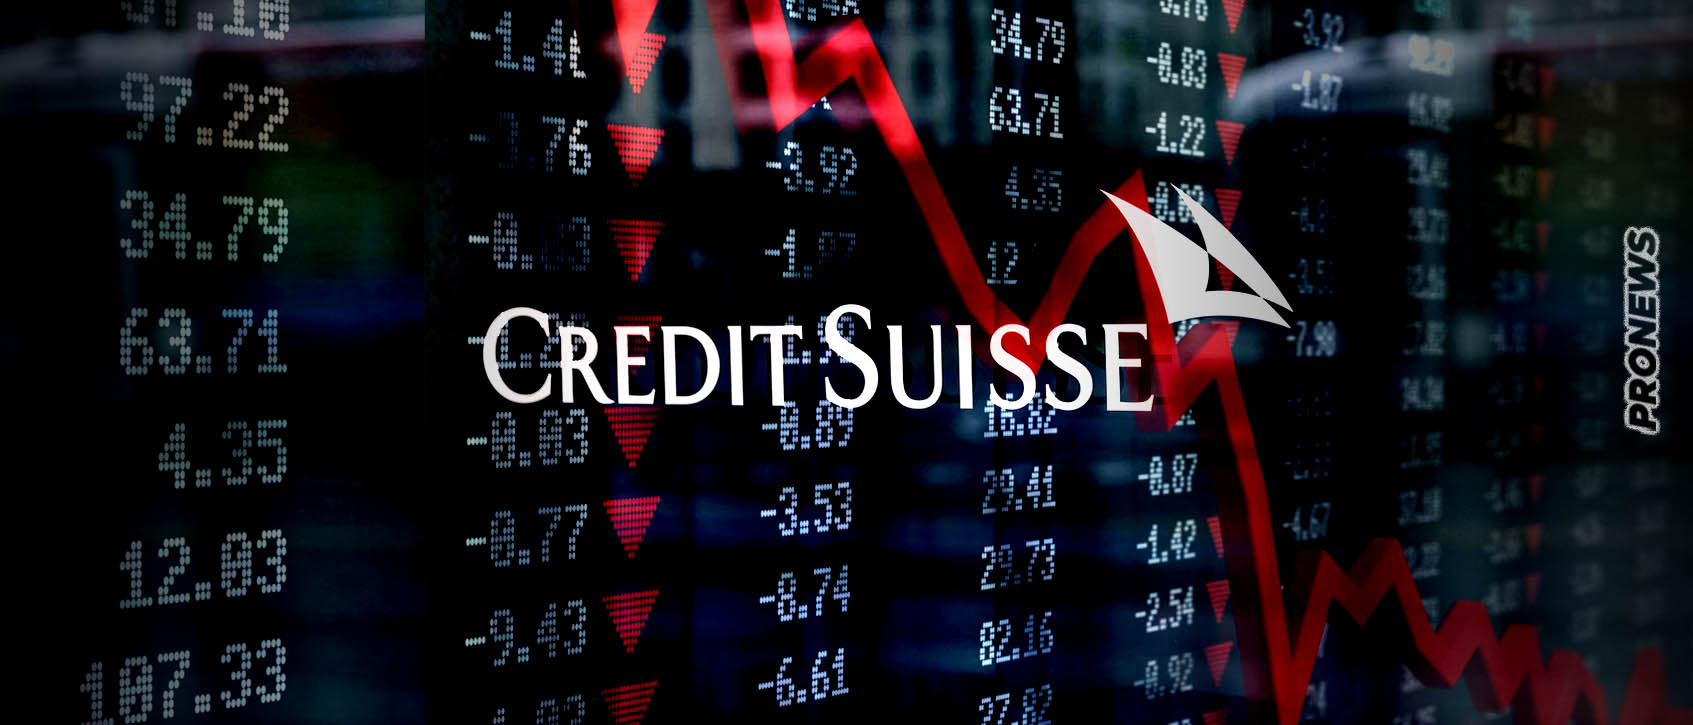 Κατέρρευσε κατά 24% η μετοχή της Credit Suisse! – Αναστέλλεται η διαπραγμάτευσή της – Κατακρημνίζονται οι ελληνικές και οι ευρωπαϊκές τράπεζες!